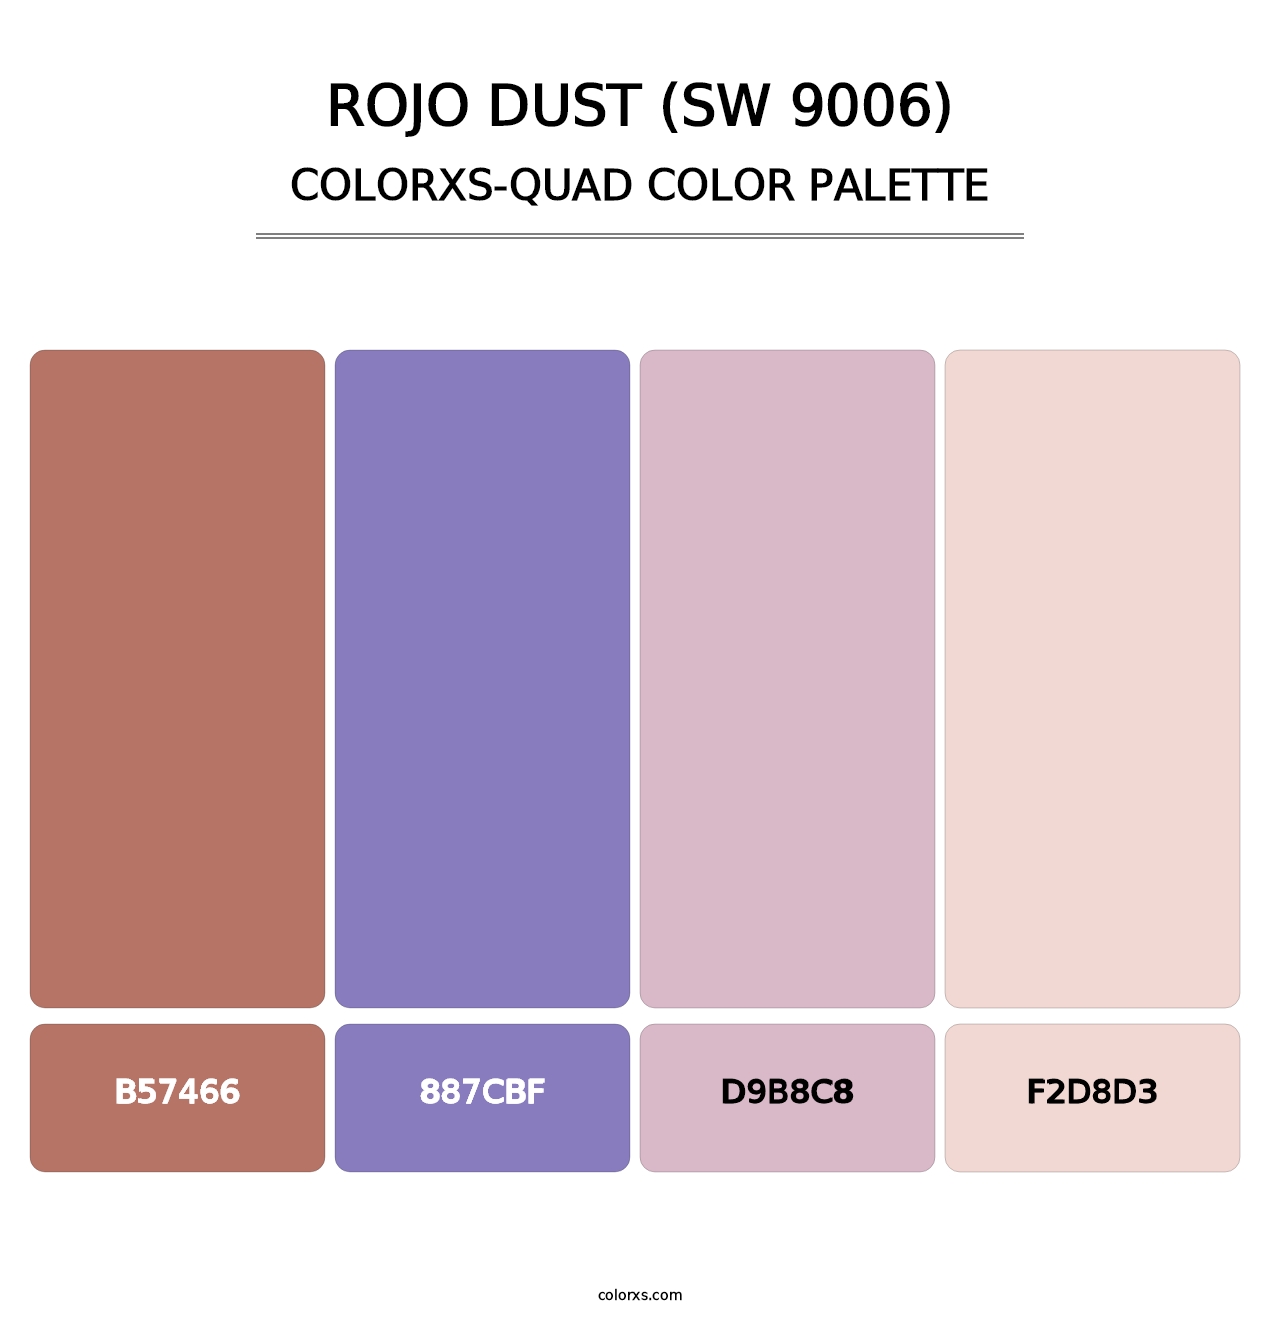 Rojo Dust (SW 9006) - Colorxs Quad Palette